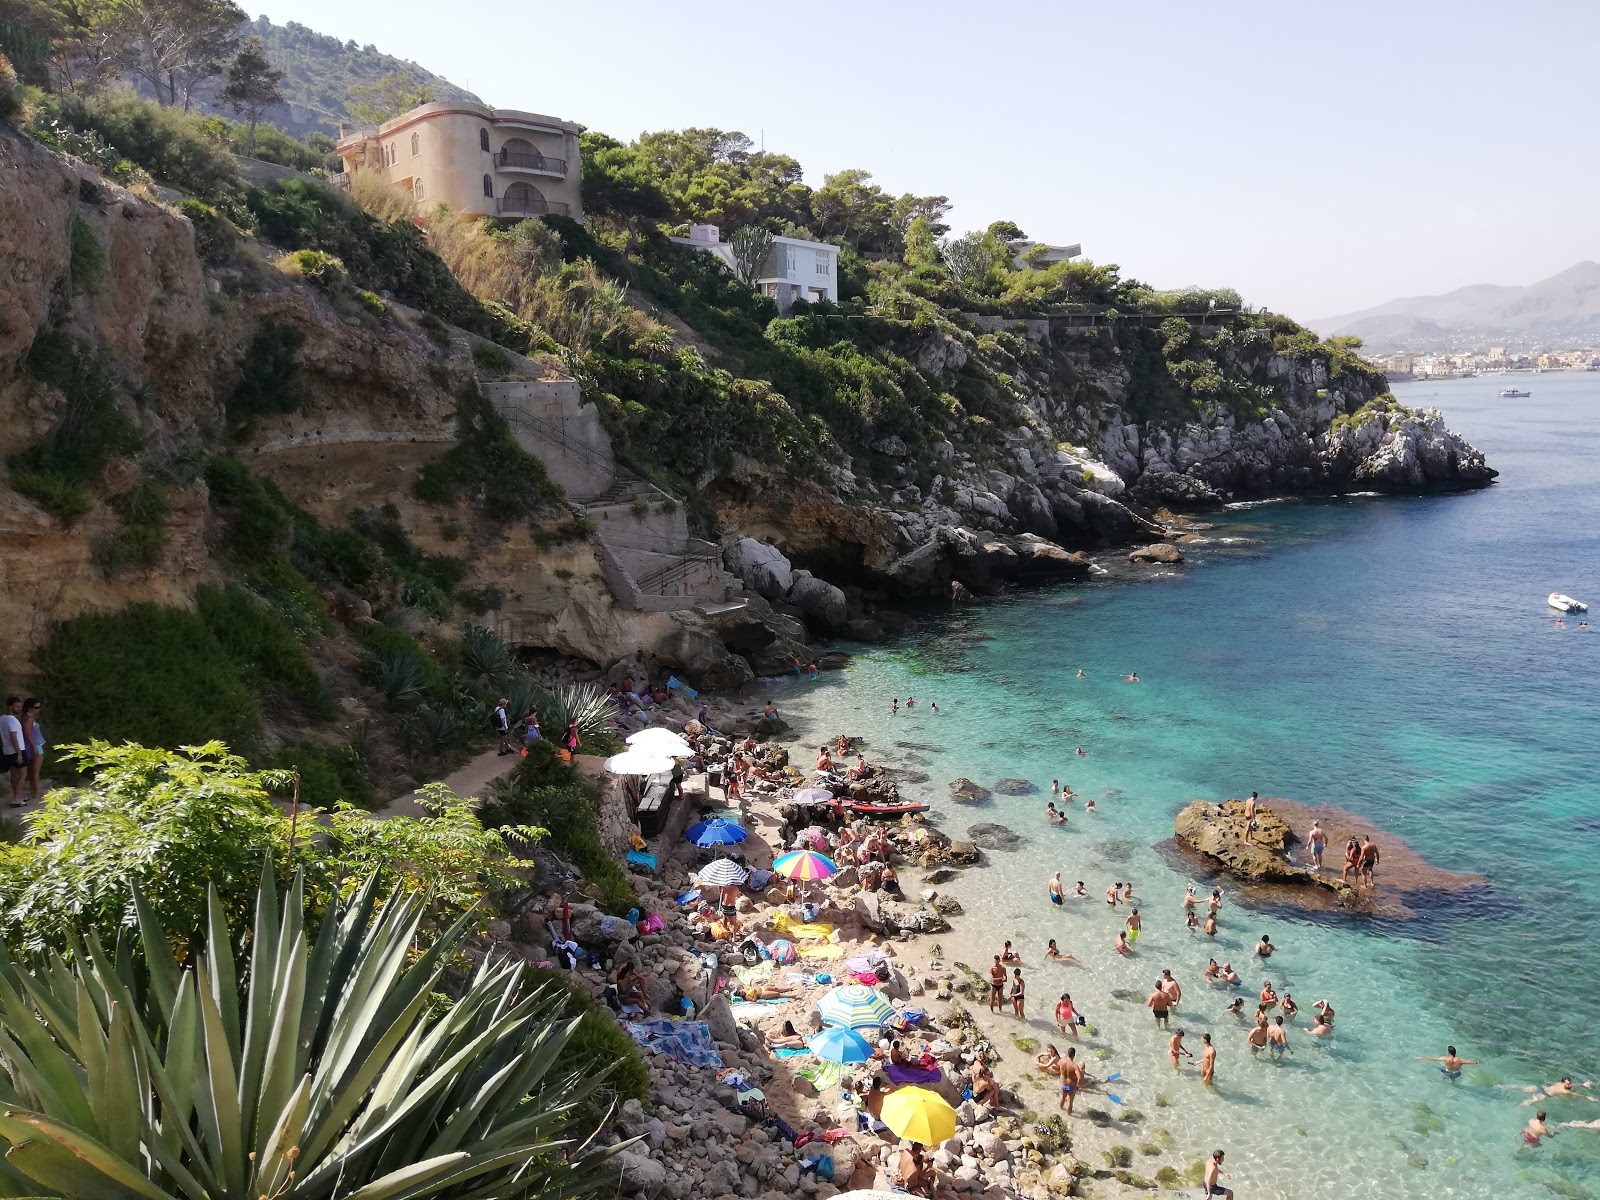 Valokuva Spiaggia dei Francesiista. sijaitsee luonnonalueella